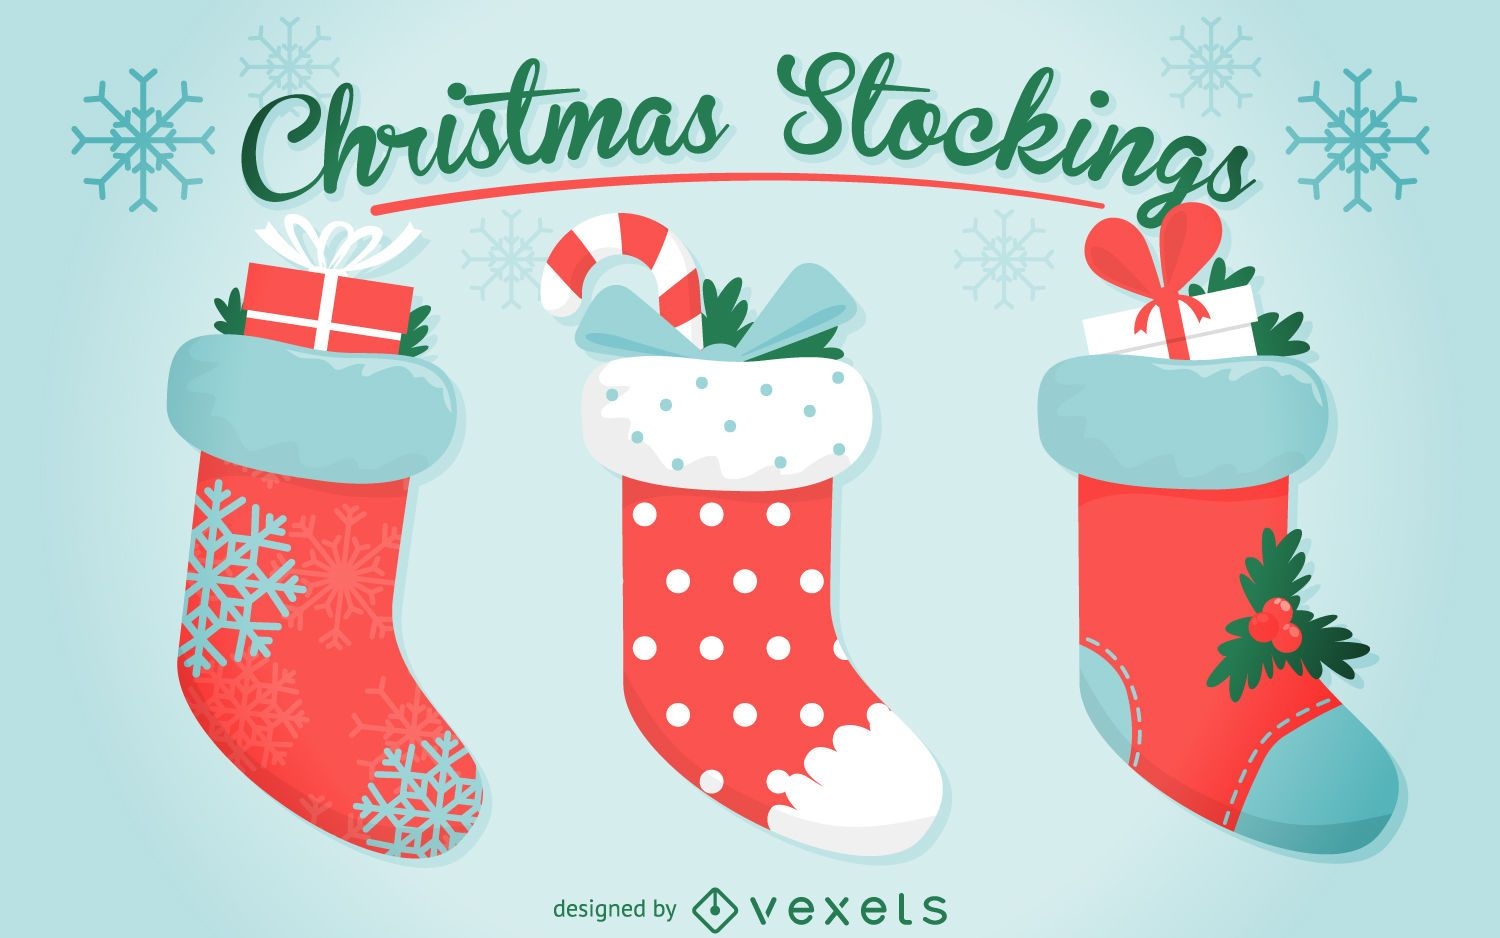 3 Christmas stocking illustration set